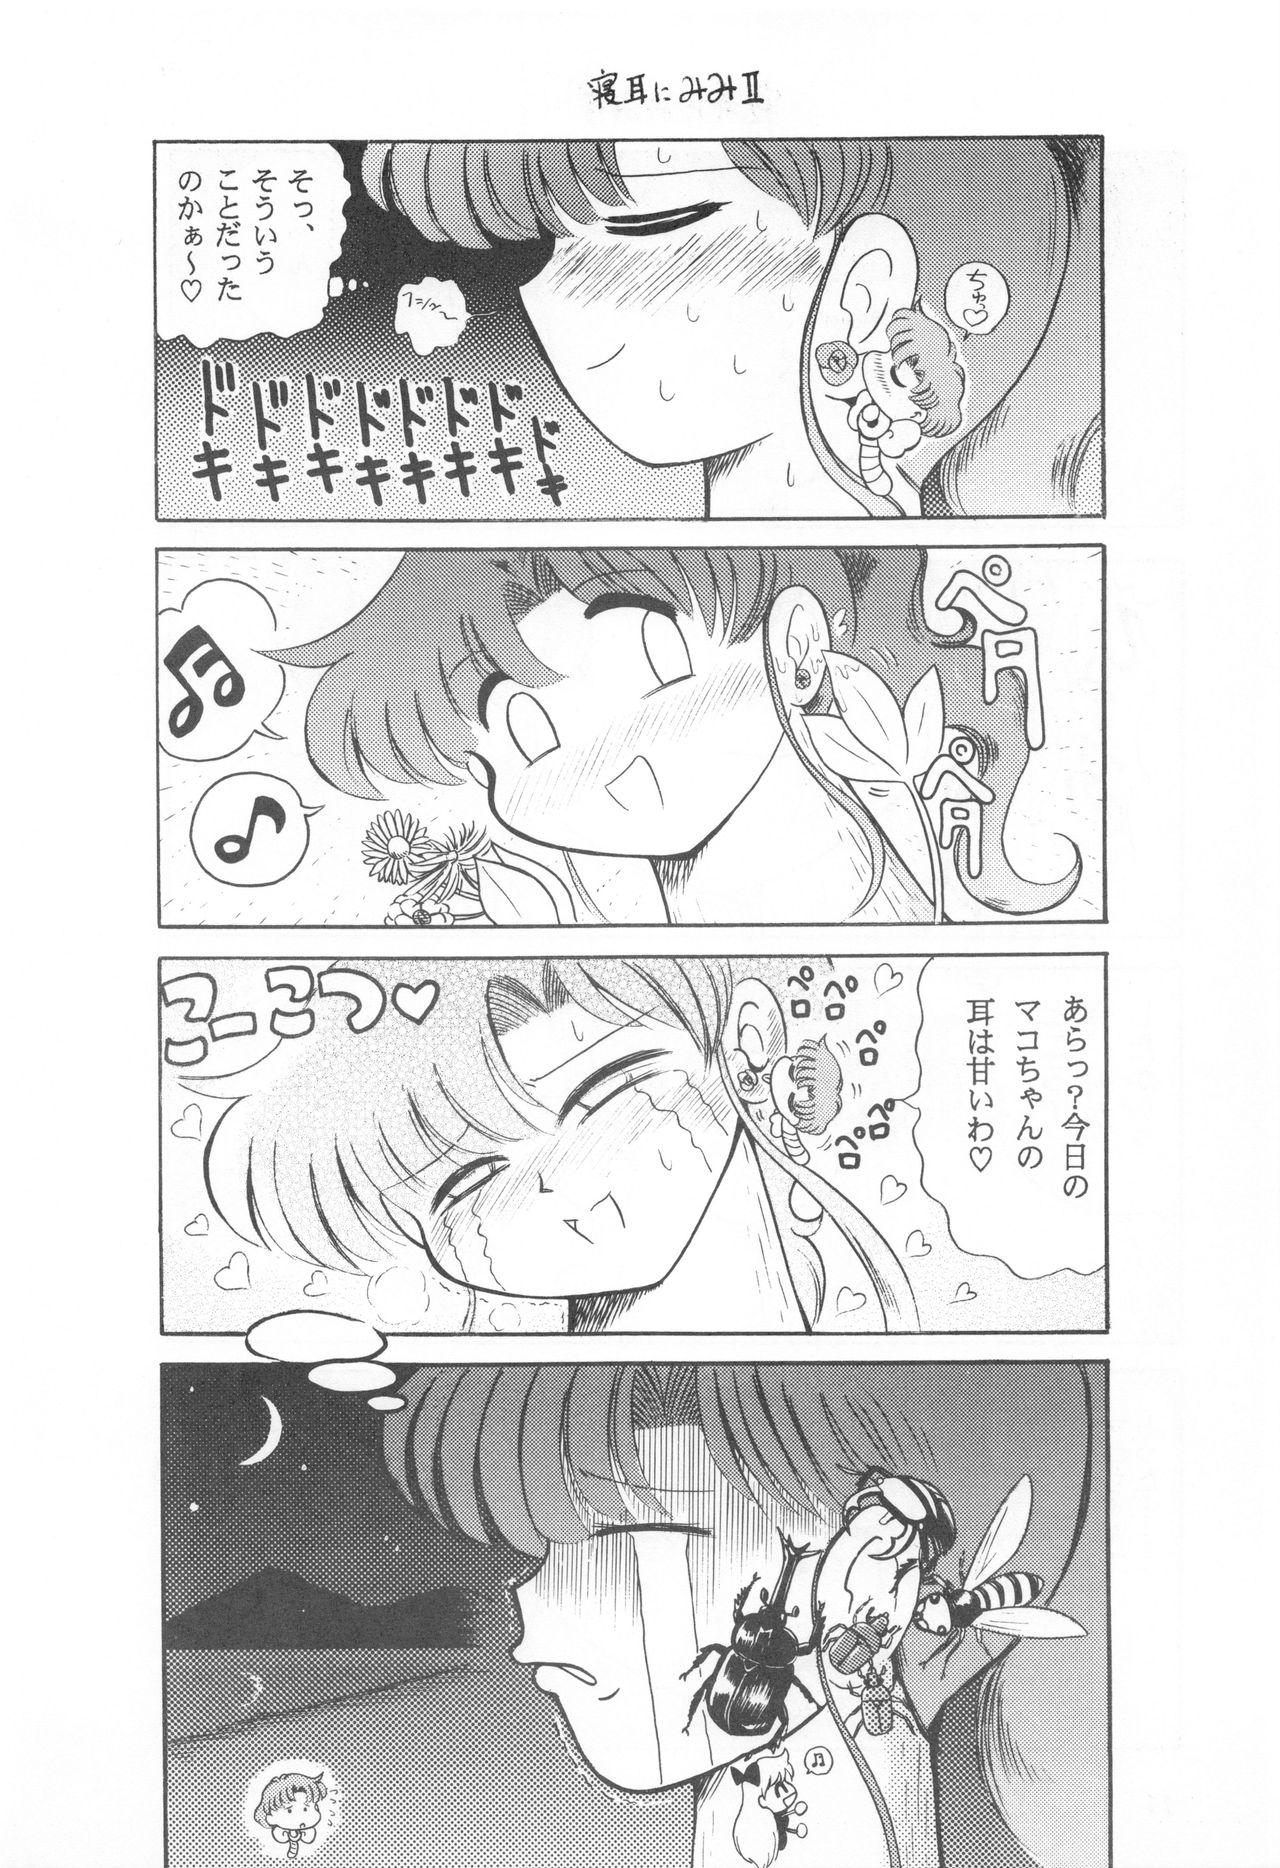 Argentina Mimizu no Ami-chan Vol. 2 - Sailor moon Ftvgirls - Page 11